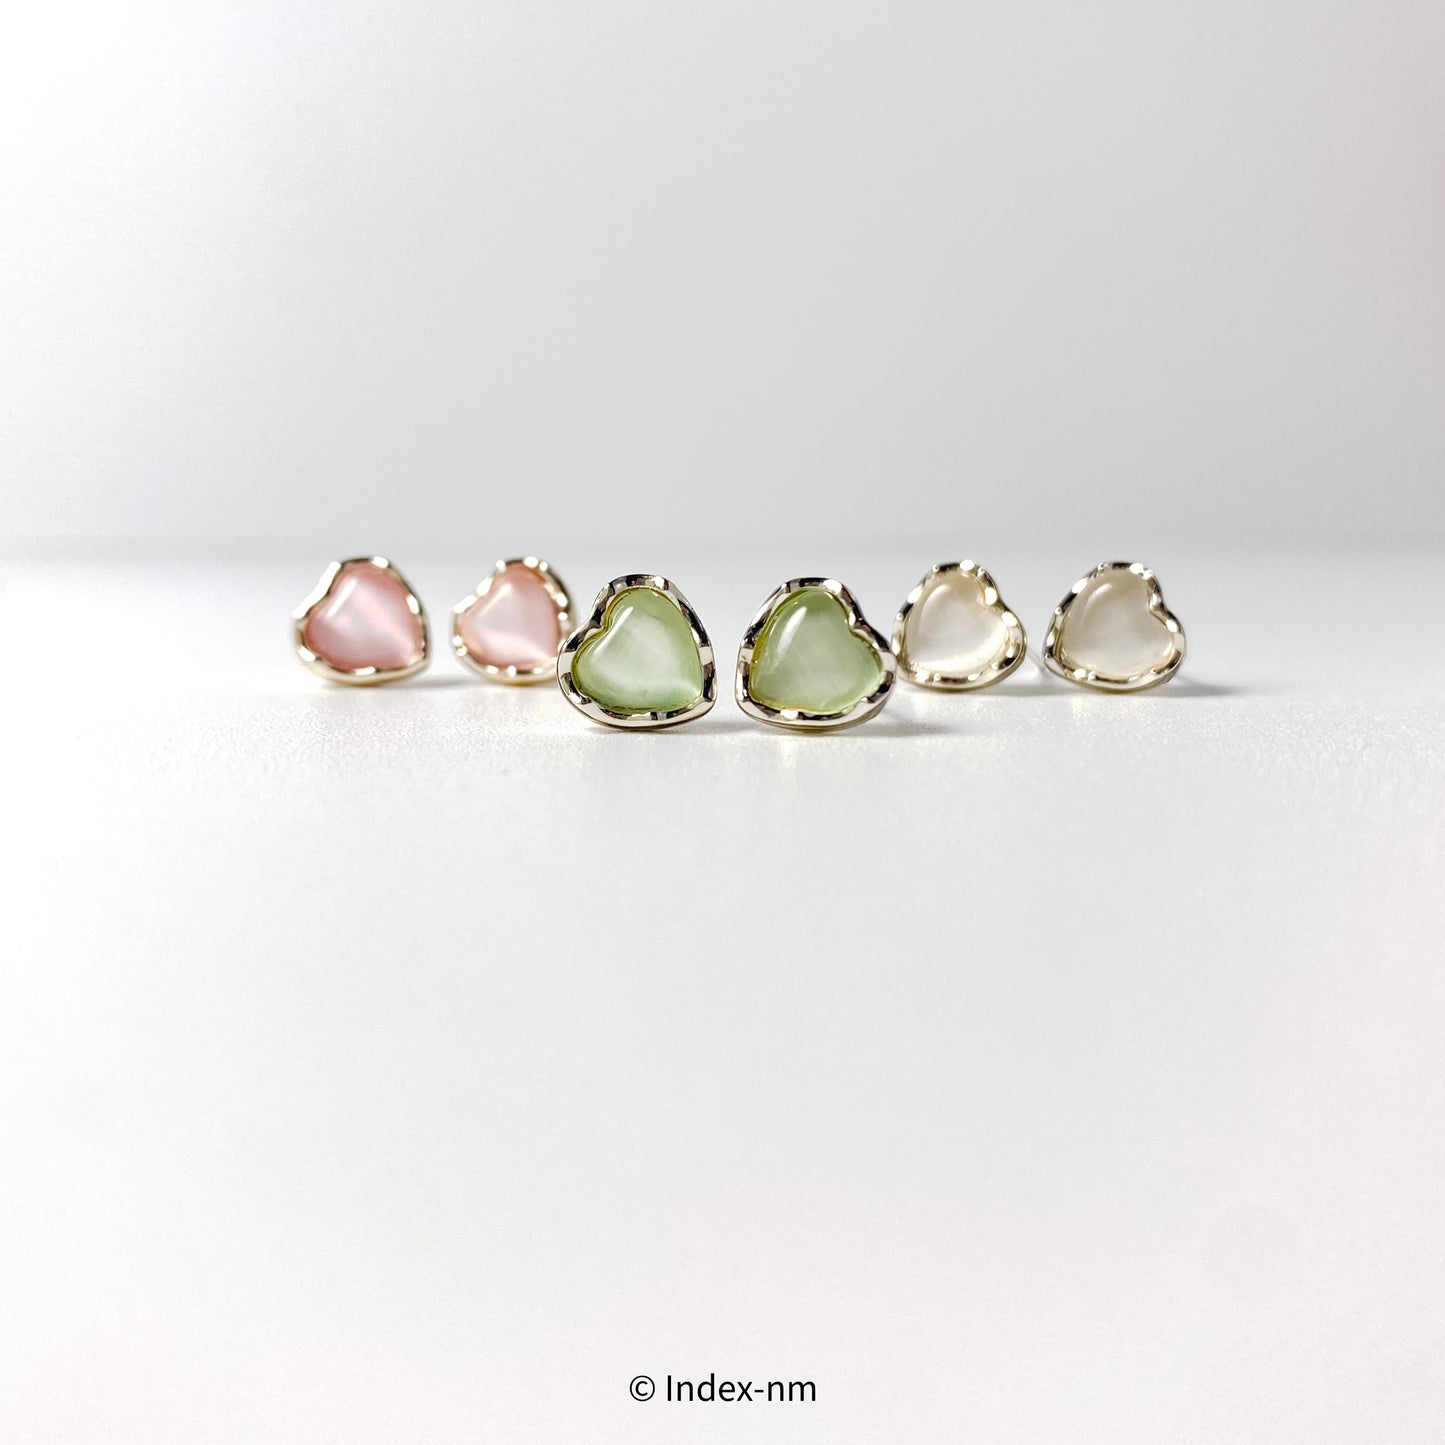 心形、銀針耳環、綠色、白色、粉紅色、Accessories